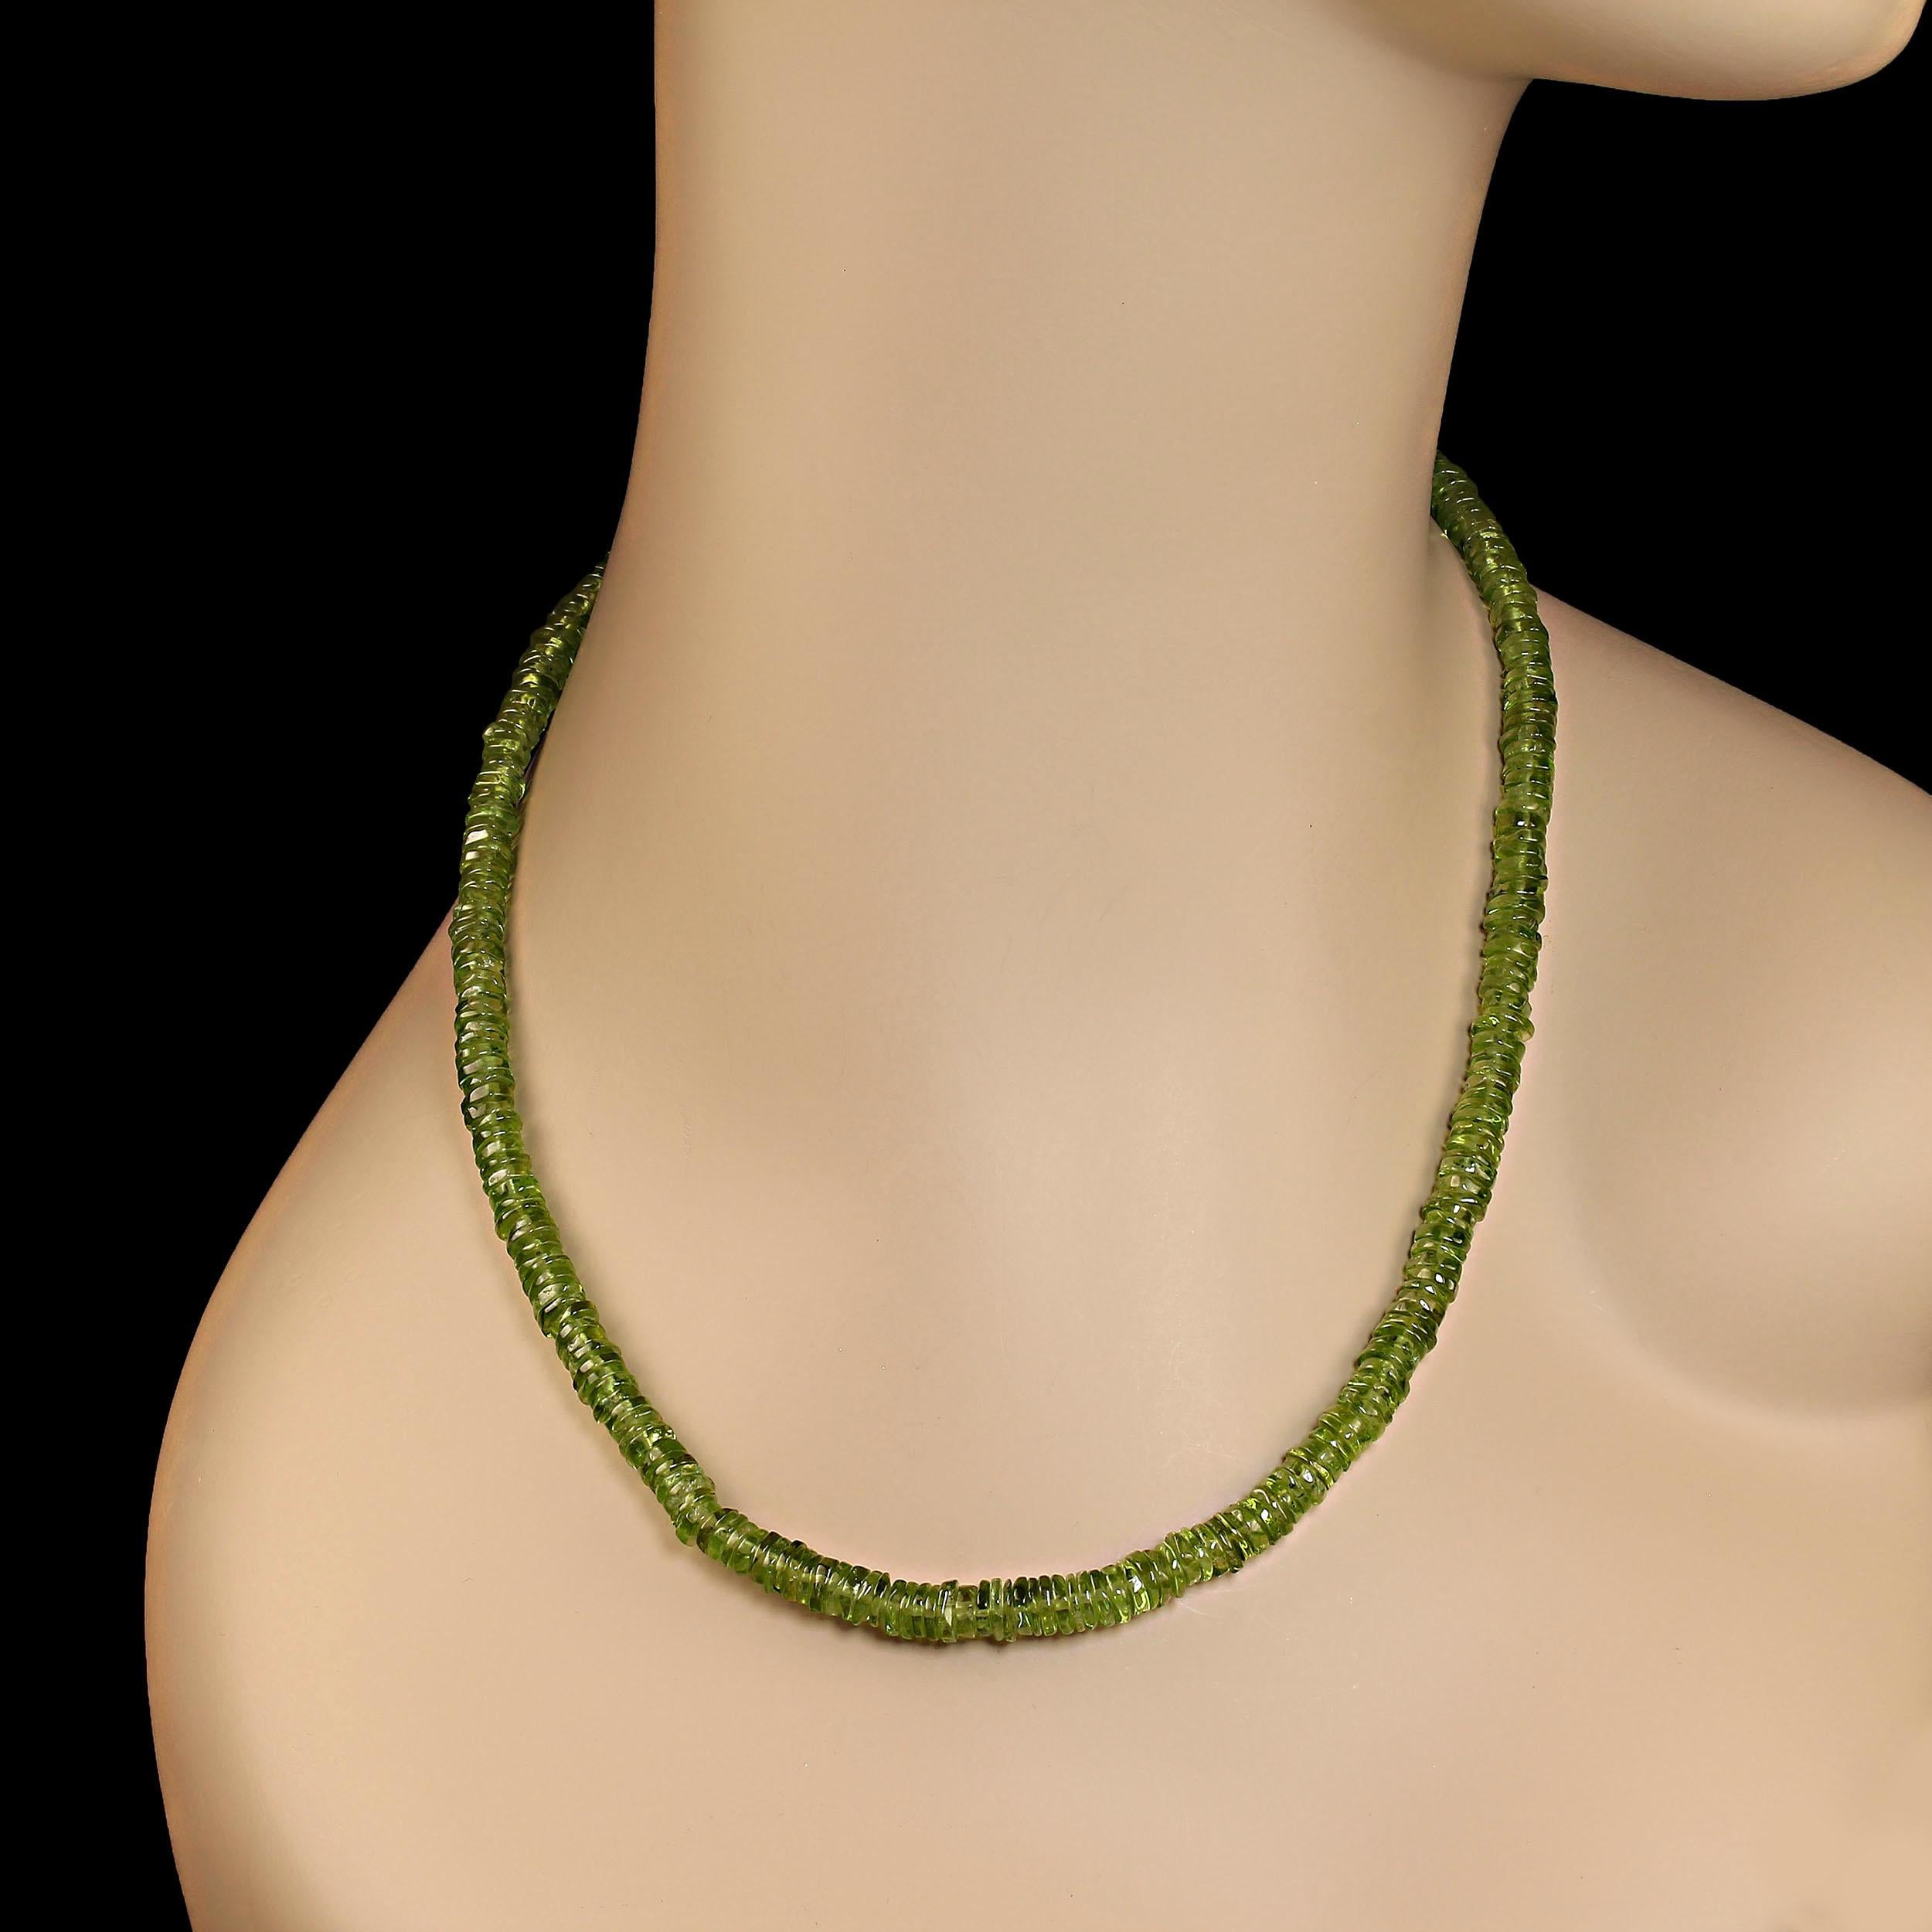 16-Zoll-Halskette mit leuchtend grünen Peridot-Rondellen, 5 mm.  Diese eleganten Edelsteine sitzen Seite an Seite, um ein dichtes, solides Aussehen von perfektem Peridotgrün zu schaffen.  Die Halskette wird mit einem silbernen Karabinerverschluss